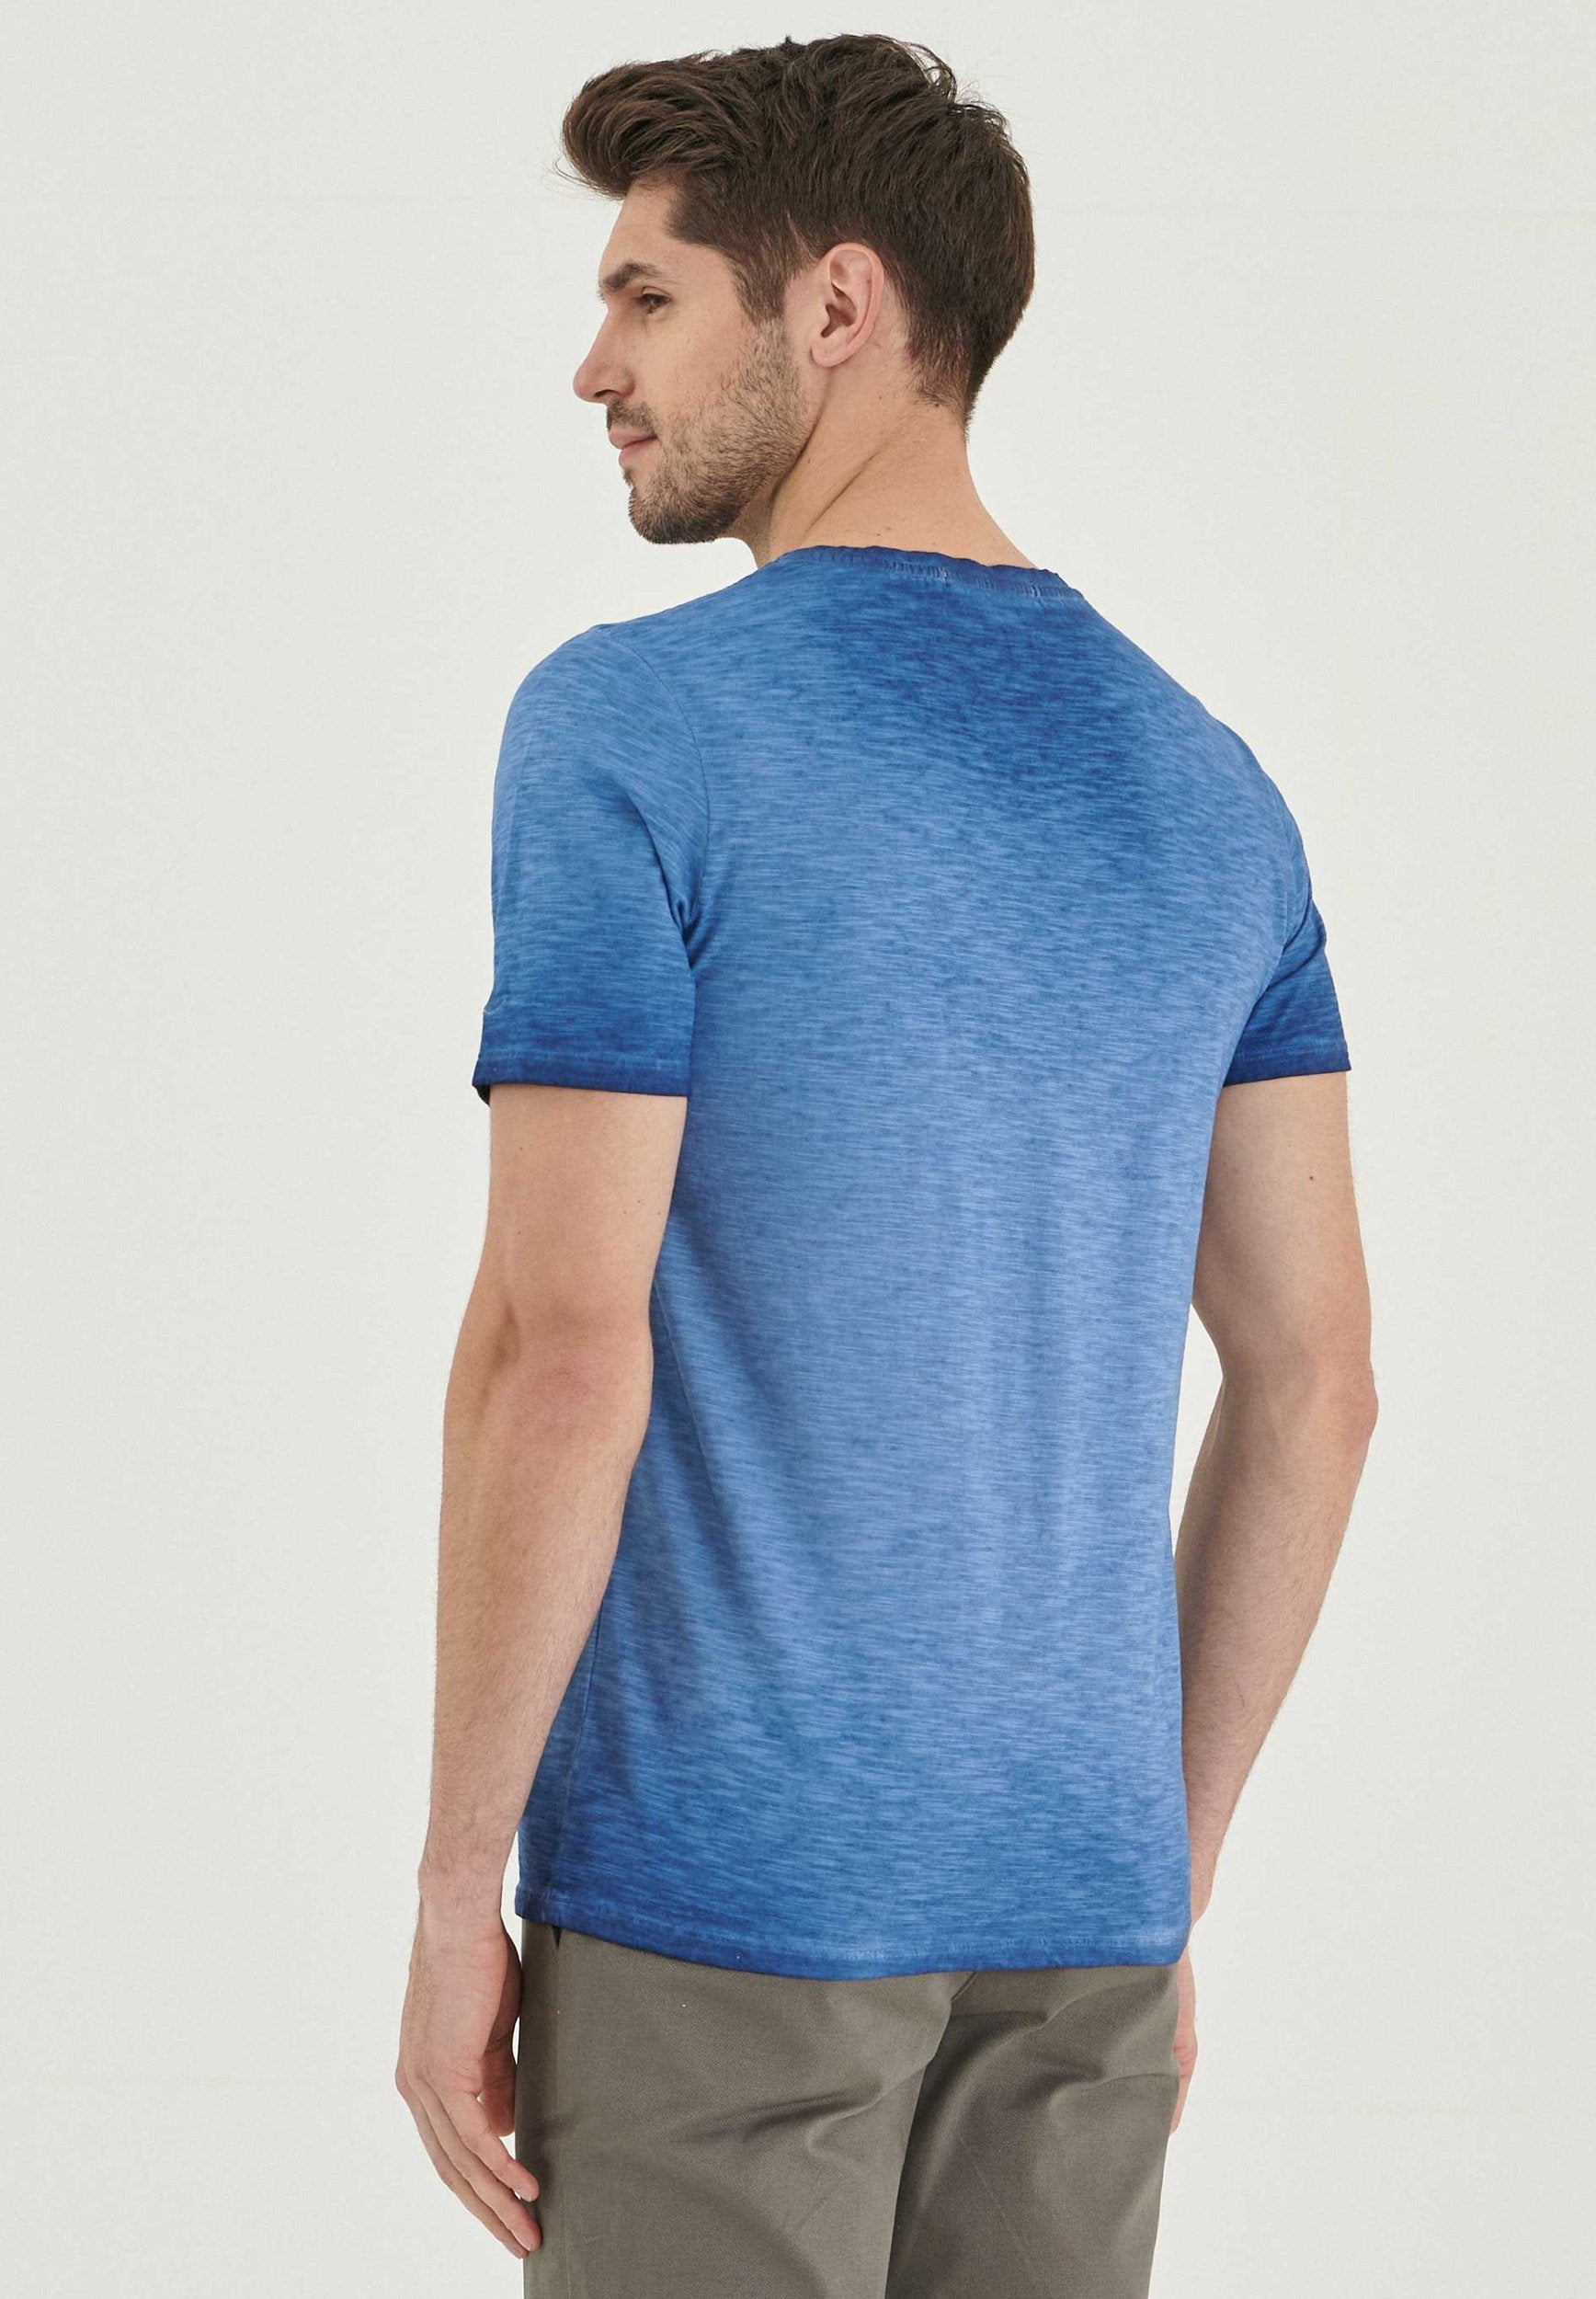 Garment Dyed T-Shirt aus Bio-Baumwolle mit Wagen-Print